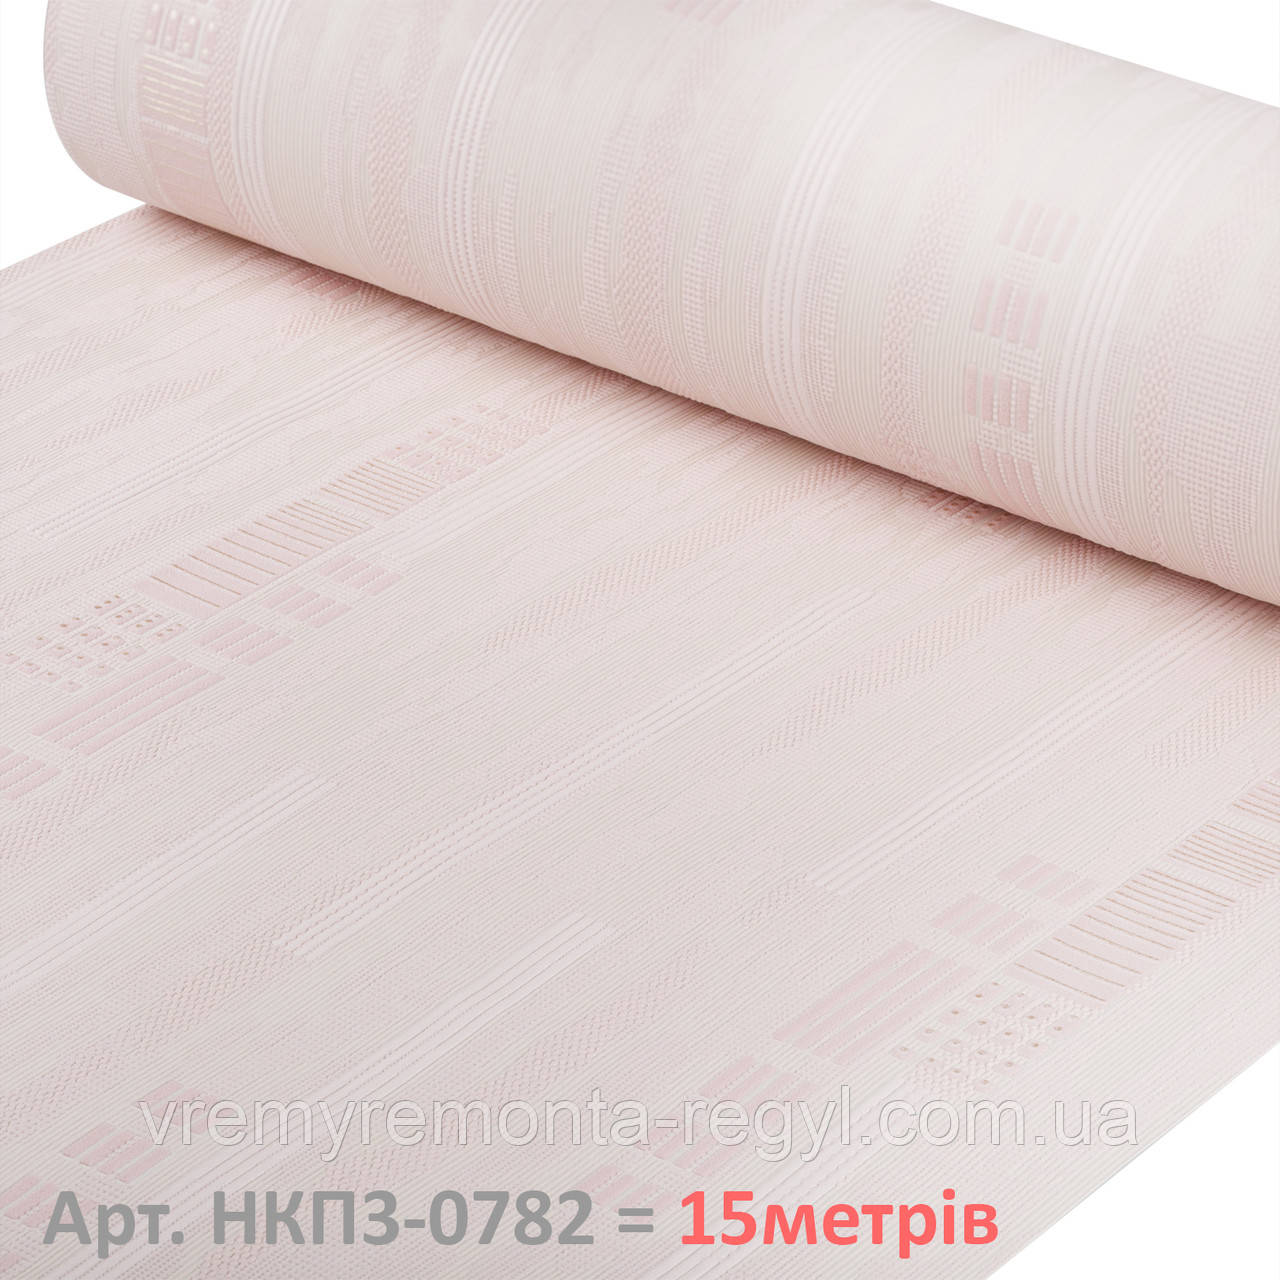 Шпалери Вінілові на паперовій основі тиснені Однотонні Персиково-Рожеви рулонні обої на стіну (53см х 15м) 3-0782